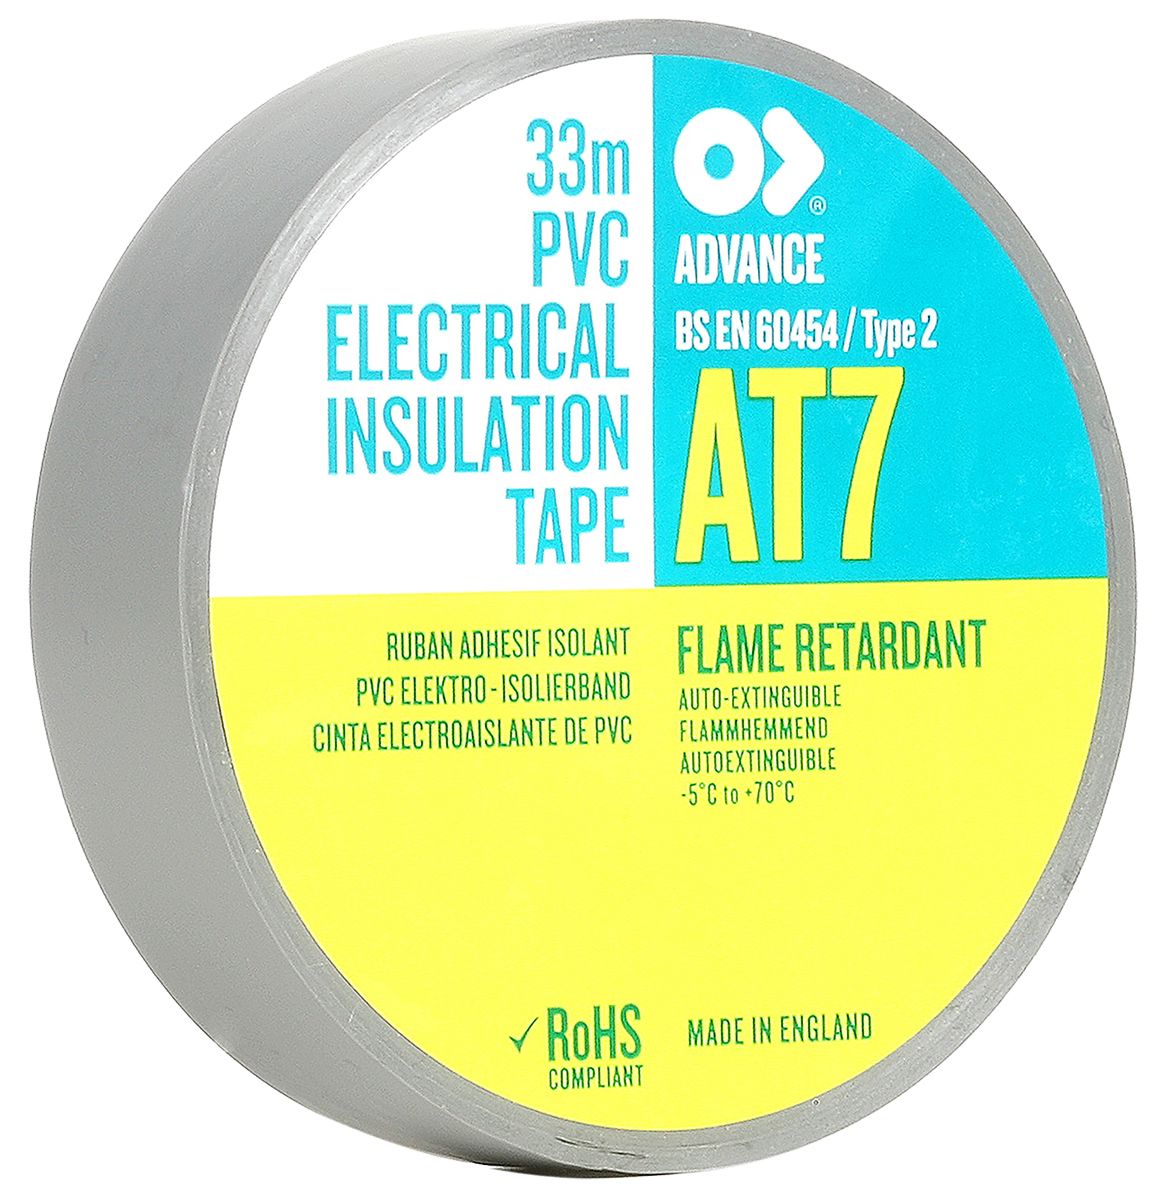 Cinta aislante de PVC Advance Tapes AT7 de color Gris, 19mm x 33m, grosor 0.13mm